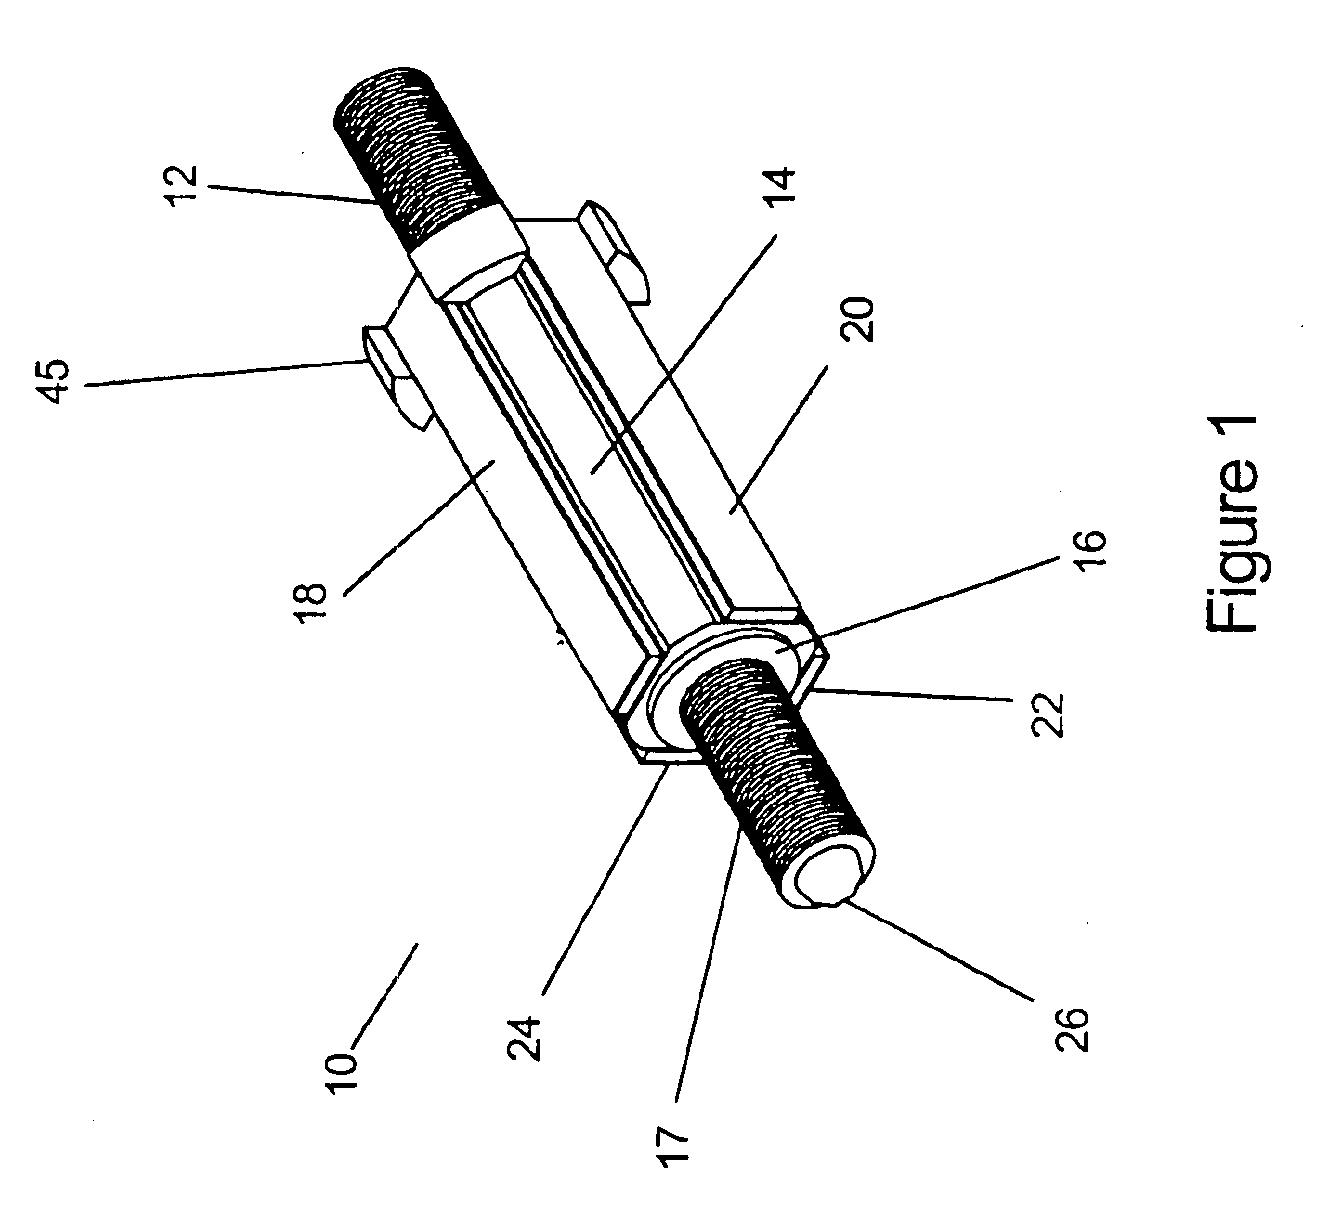 Ultrasonic lead screw motor